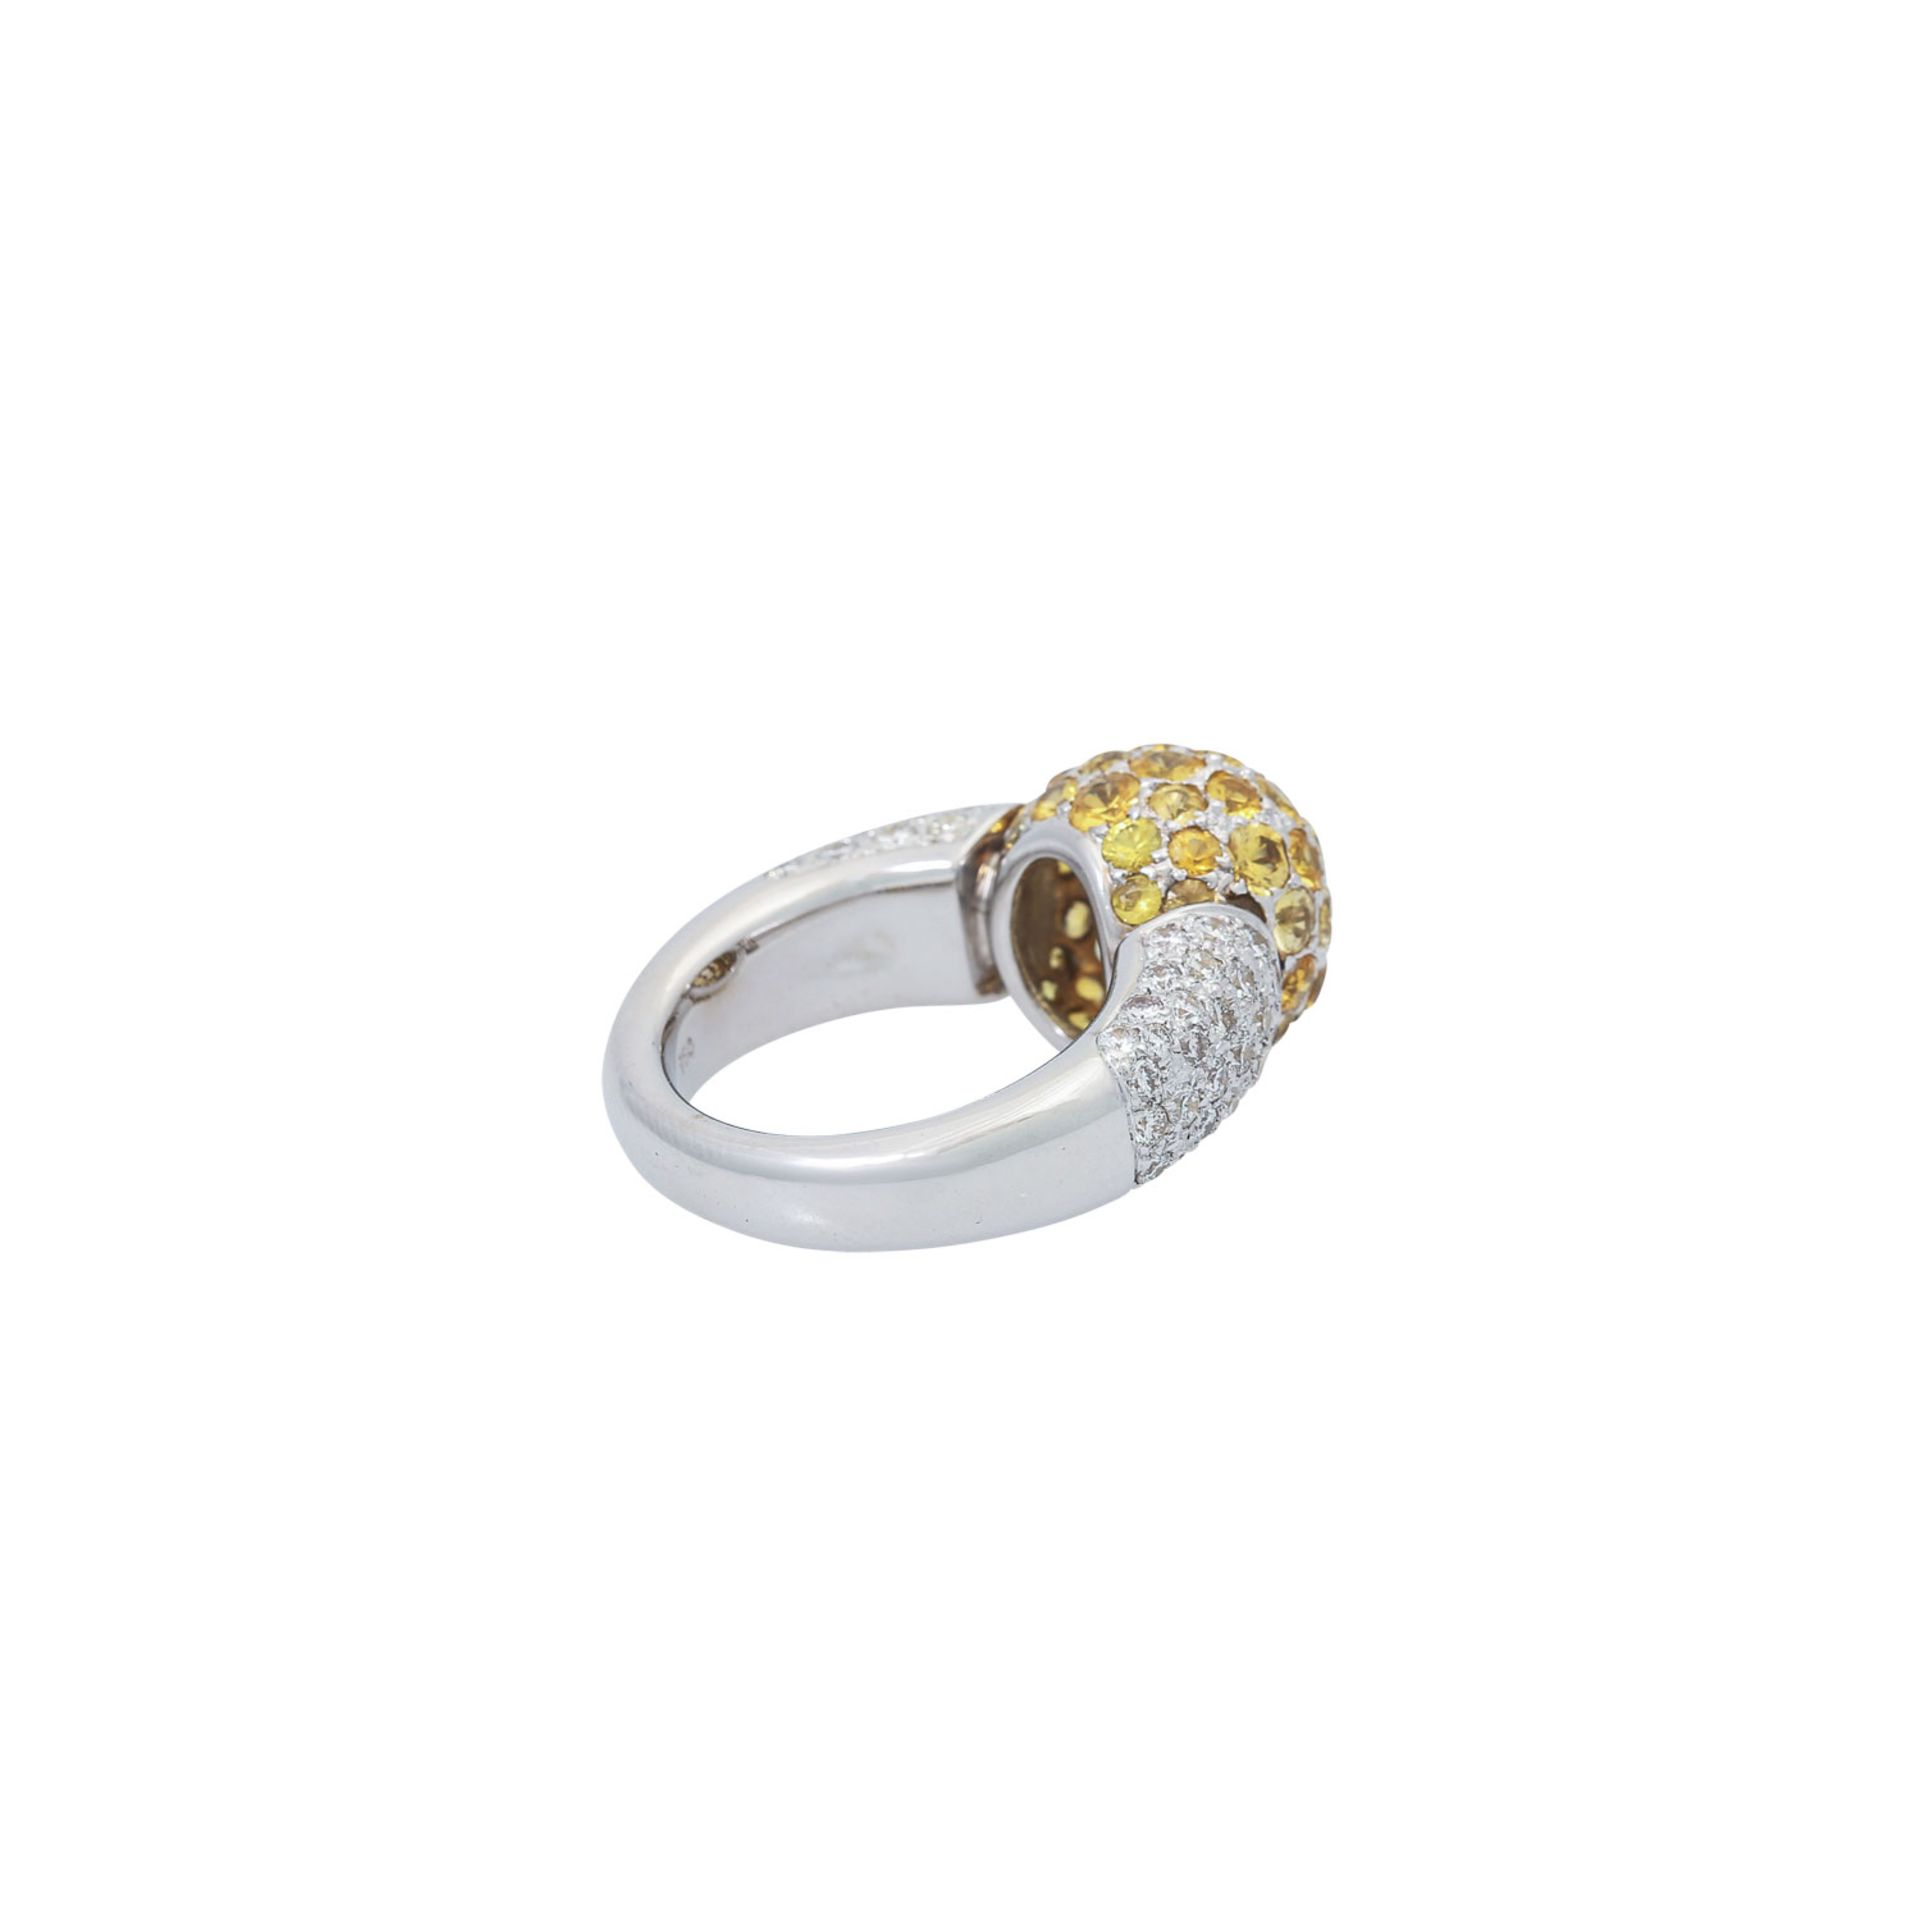 Ring mit gelben Saphiren und Brillanten - Image 3 of 5